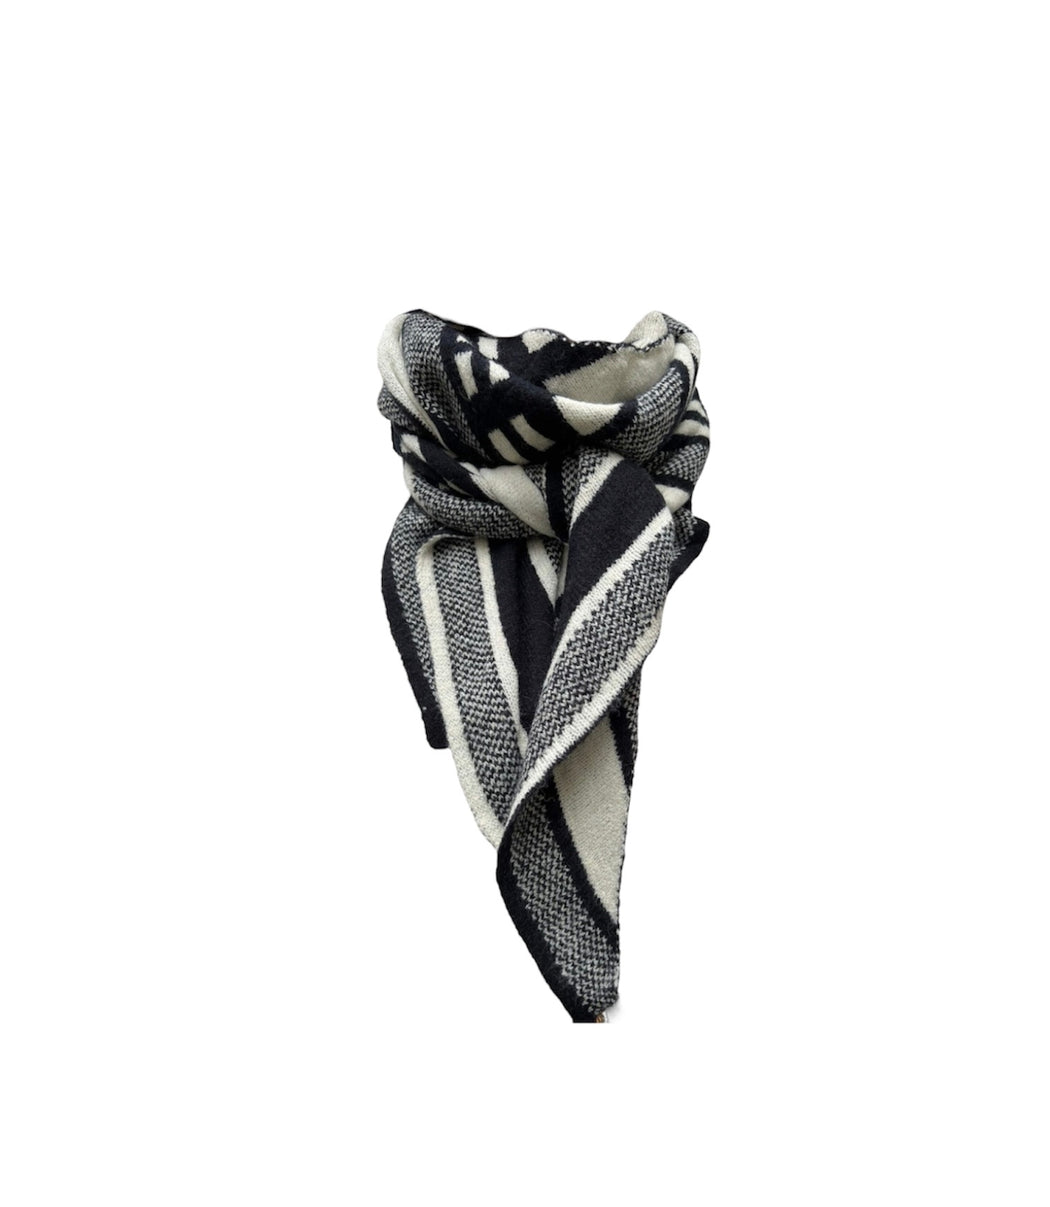 Tørklæde i strik, model Orail Lux Scarf fra Qnuz